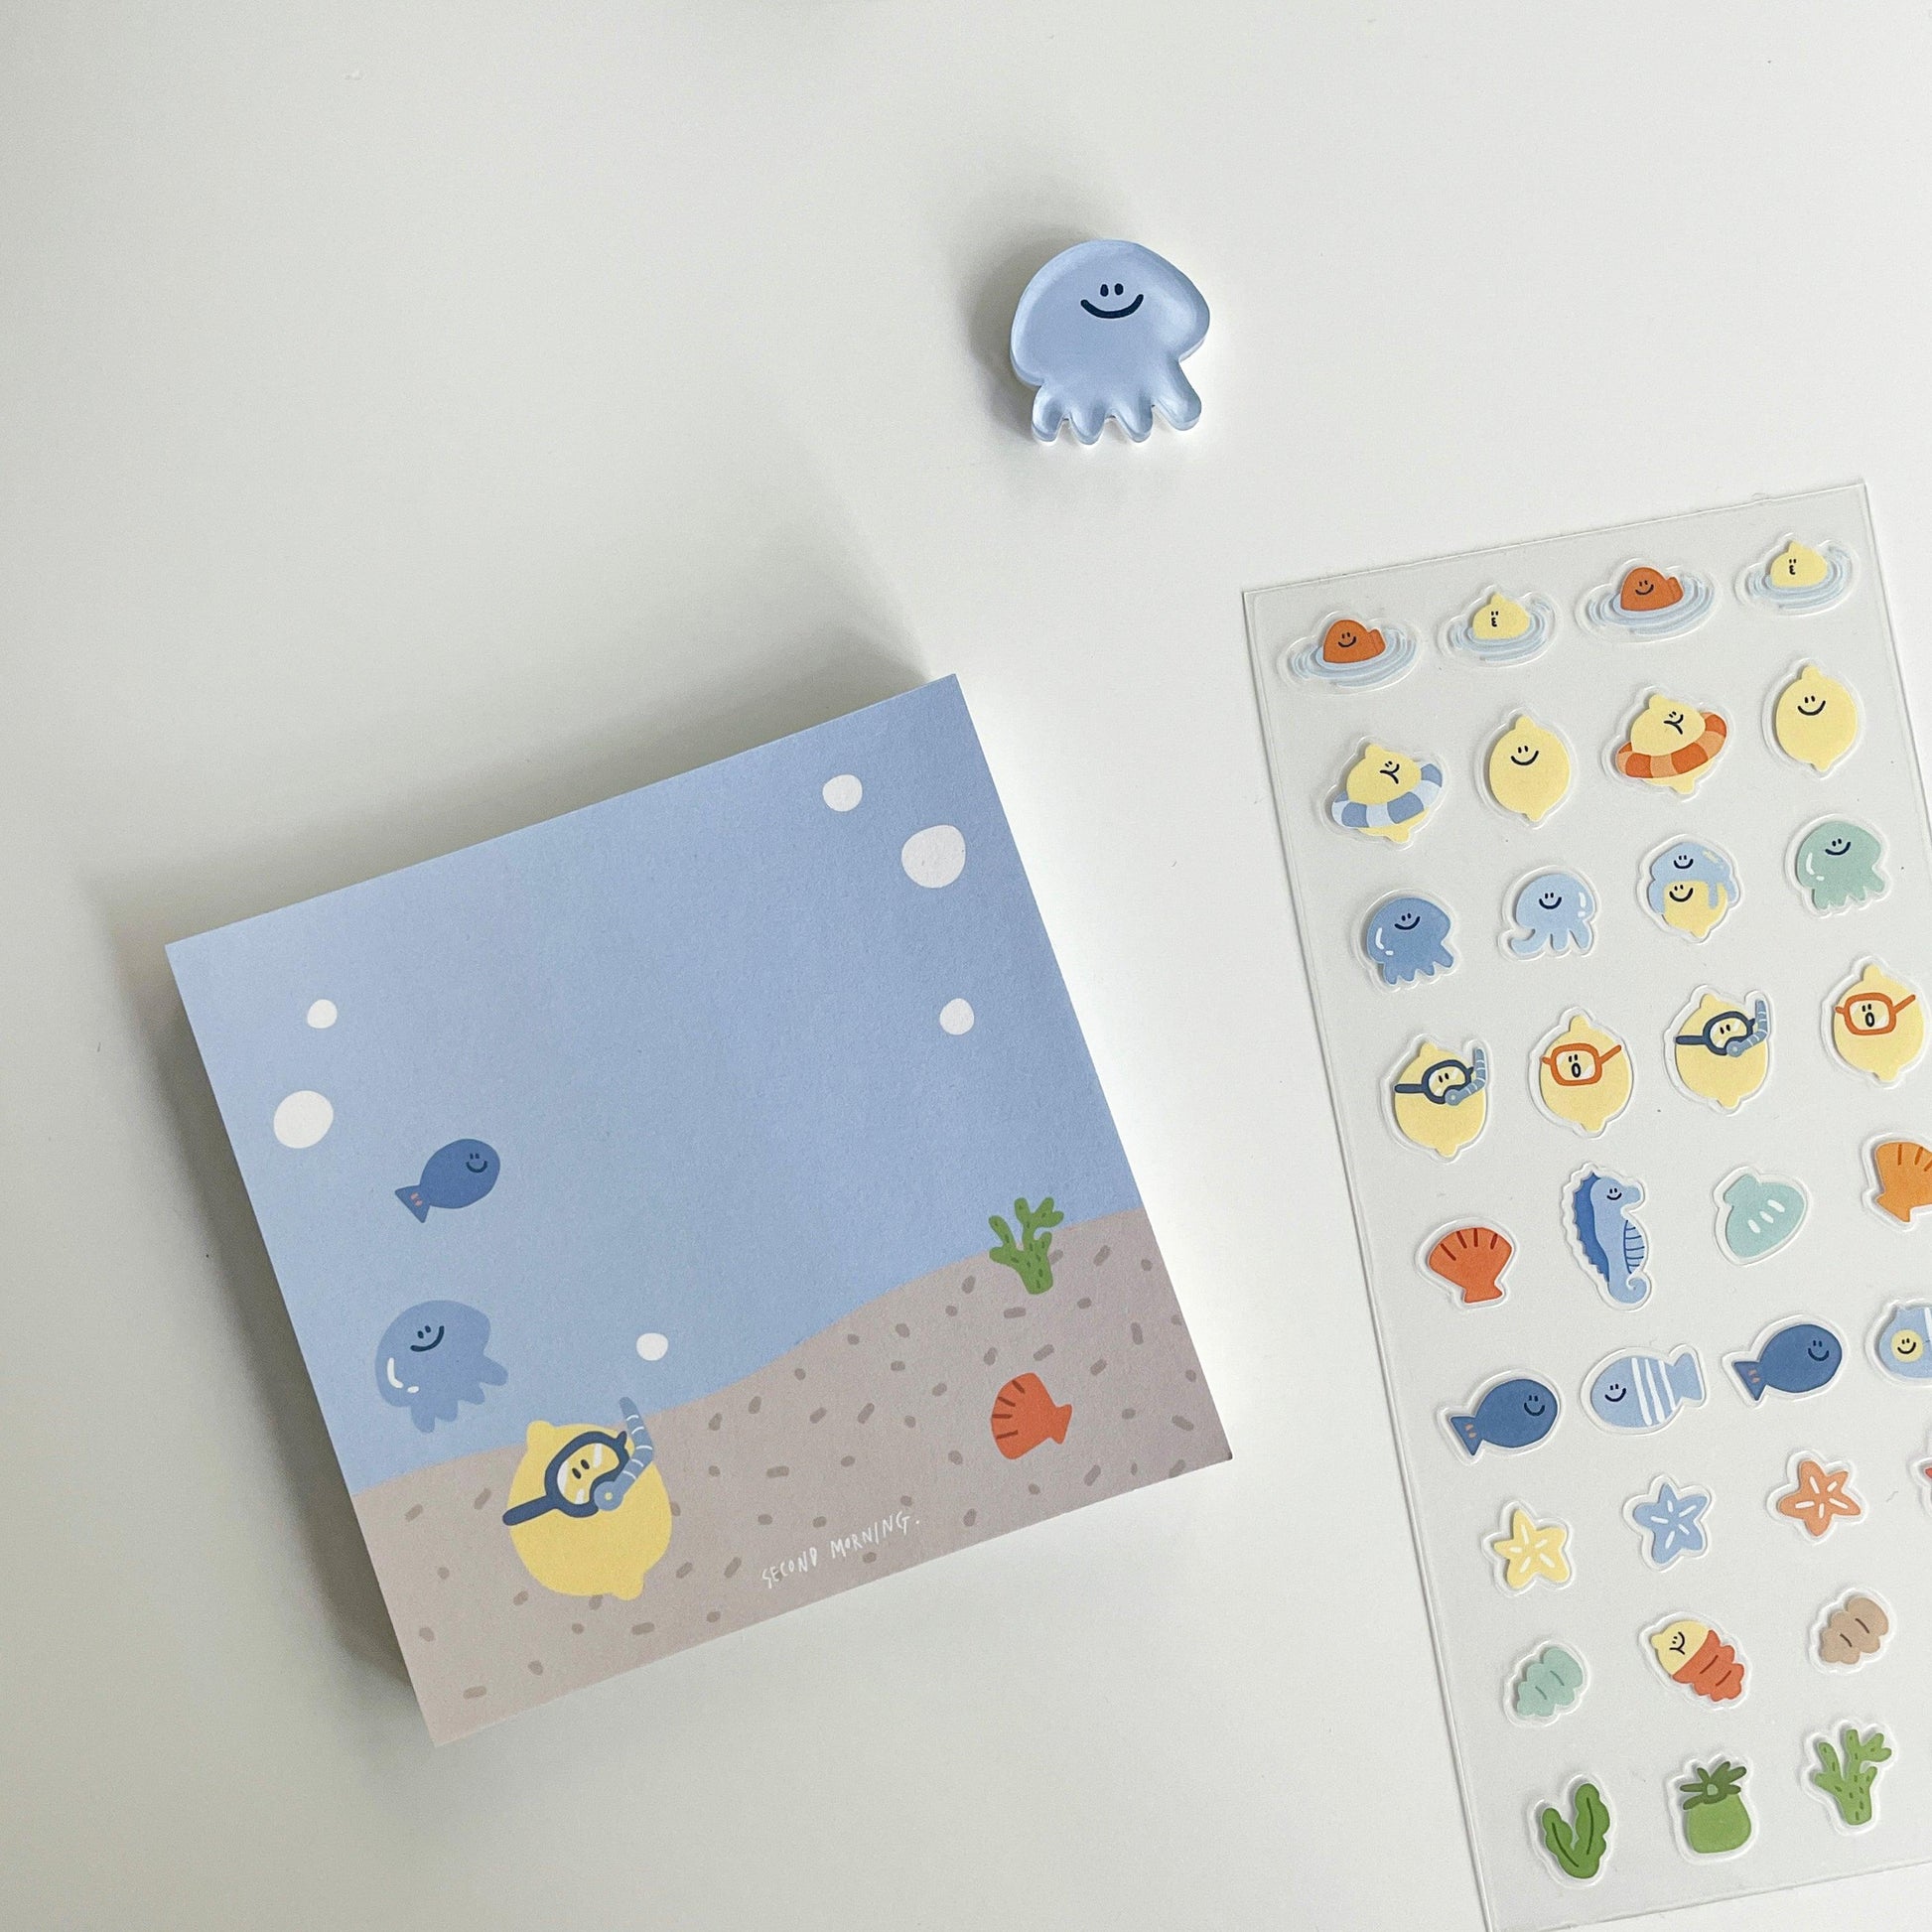 【現貨】Second Morning Blue May Memo Pad 限量版便條紙 (2款) - SOUL SIMPLE HK